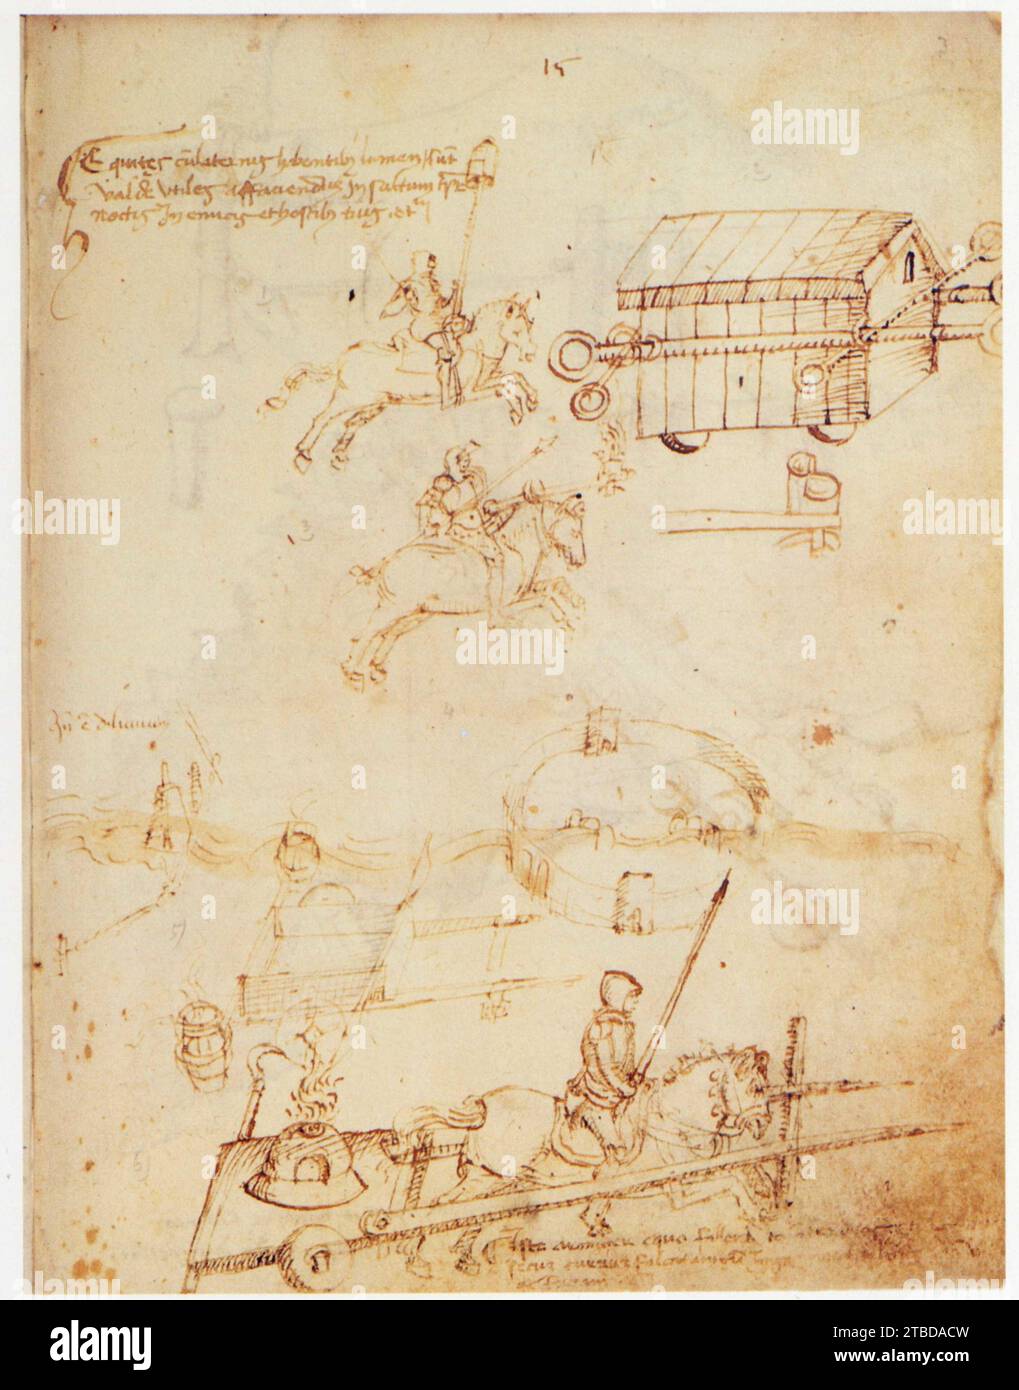 Mariano di Jacopo dit Taccola.1382-1453.Char d'assaut de nuit équipé de lances et d'une lanterne. Stock Photo